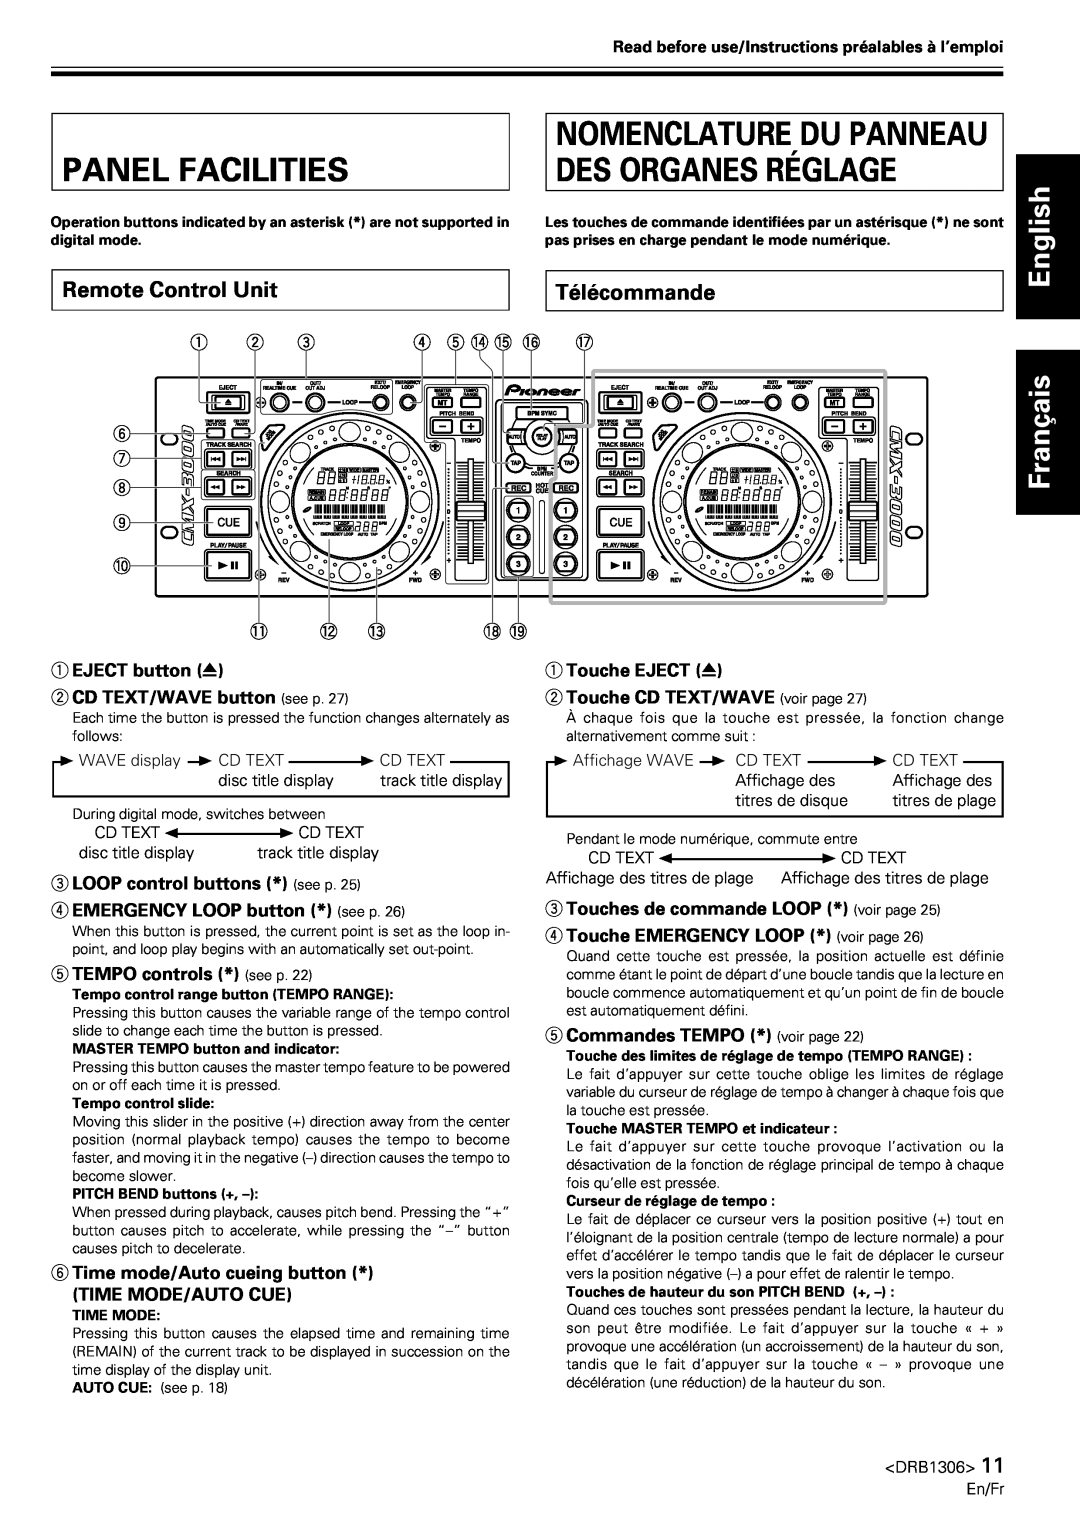 Pioneer CMX-3000 Panel Facilities, Nomenclature Du Panneau Des Organes Réglage, Remote Control Unit, Télécommande 